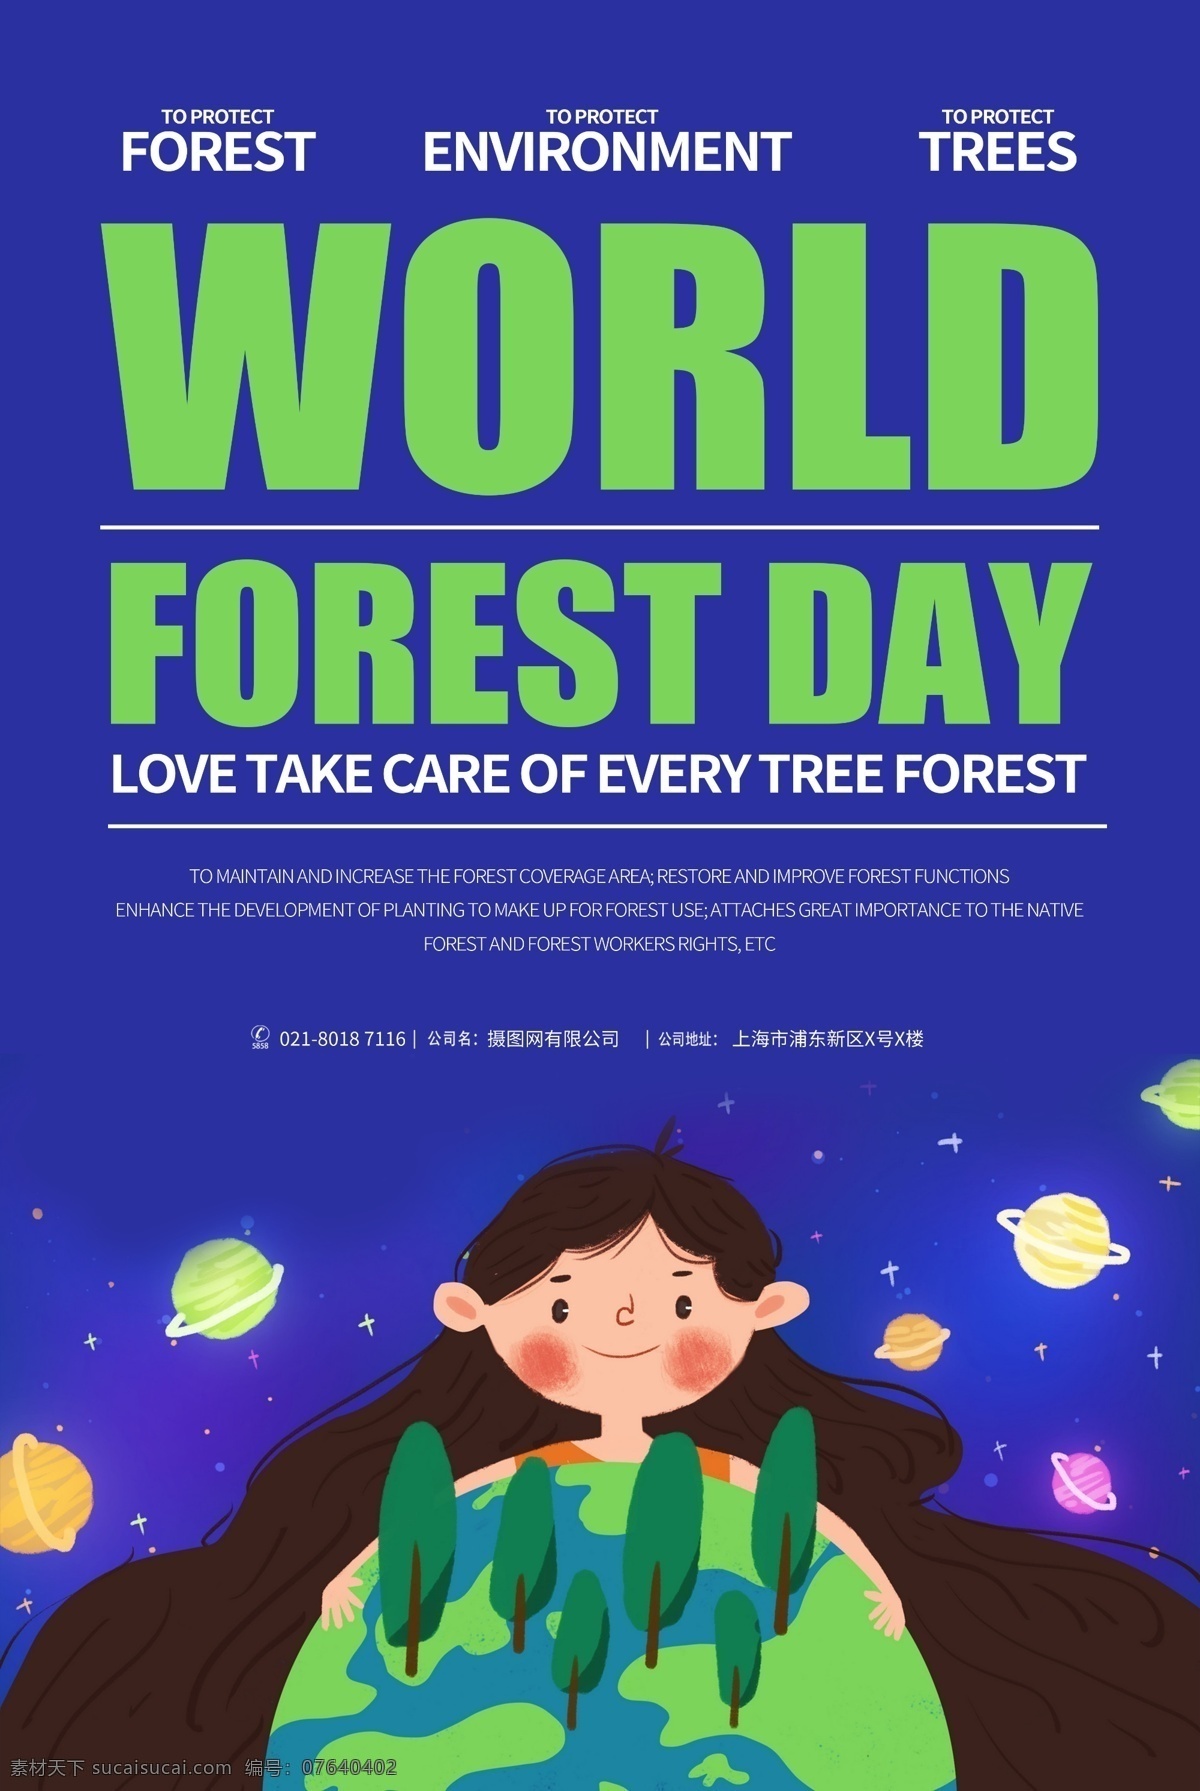 世界 森林 日 纯 英文 宣传海报 世界森林 树木 树林 爱护树木 保护森林 公益 公益海报 宣传 公益宣传 全英文 纯英文 英文海报 资源 森林资源